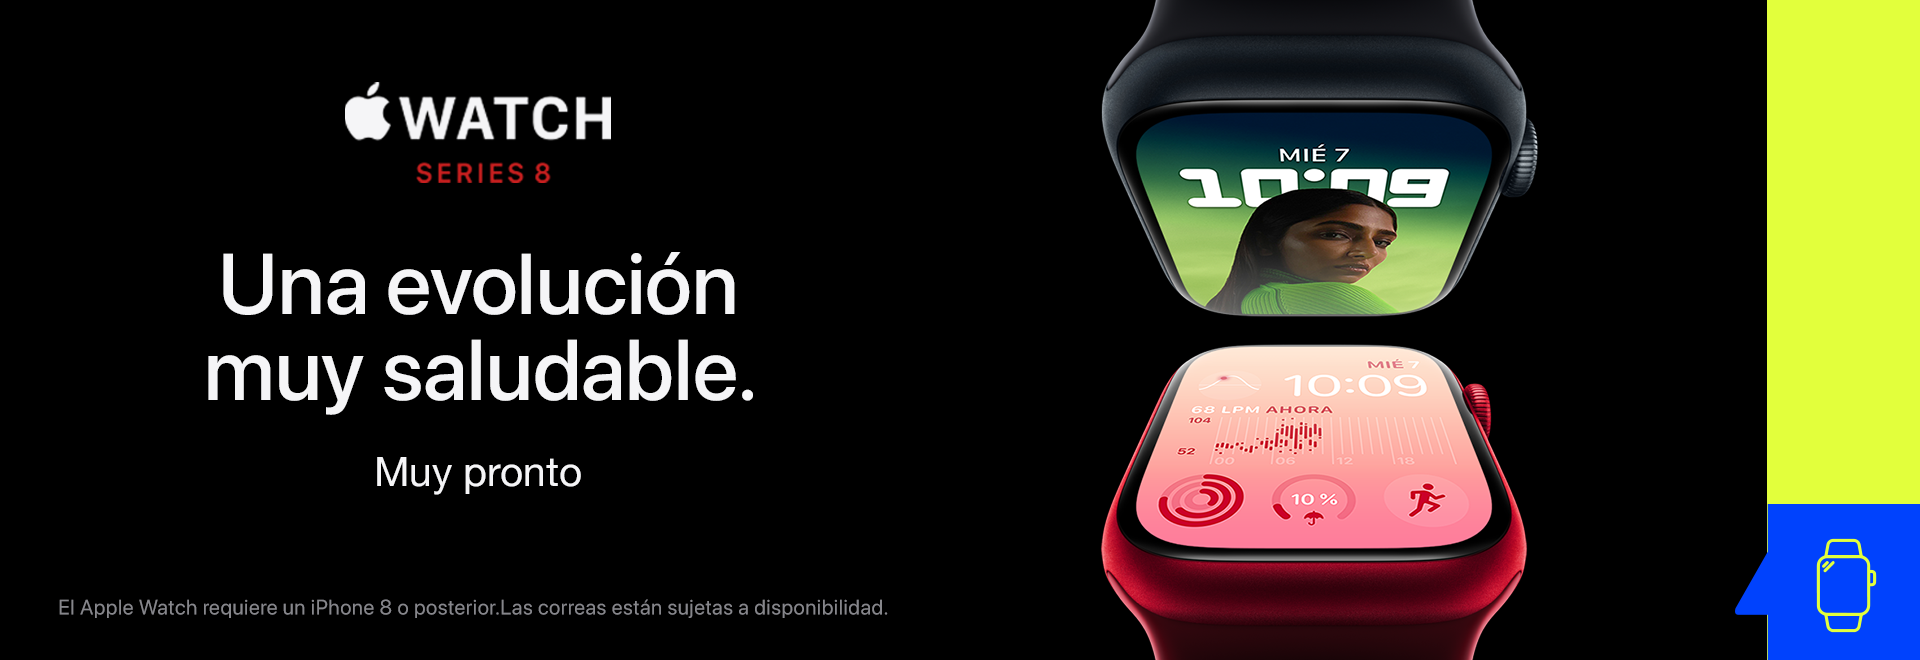 Header Apple Watch Series 3